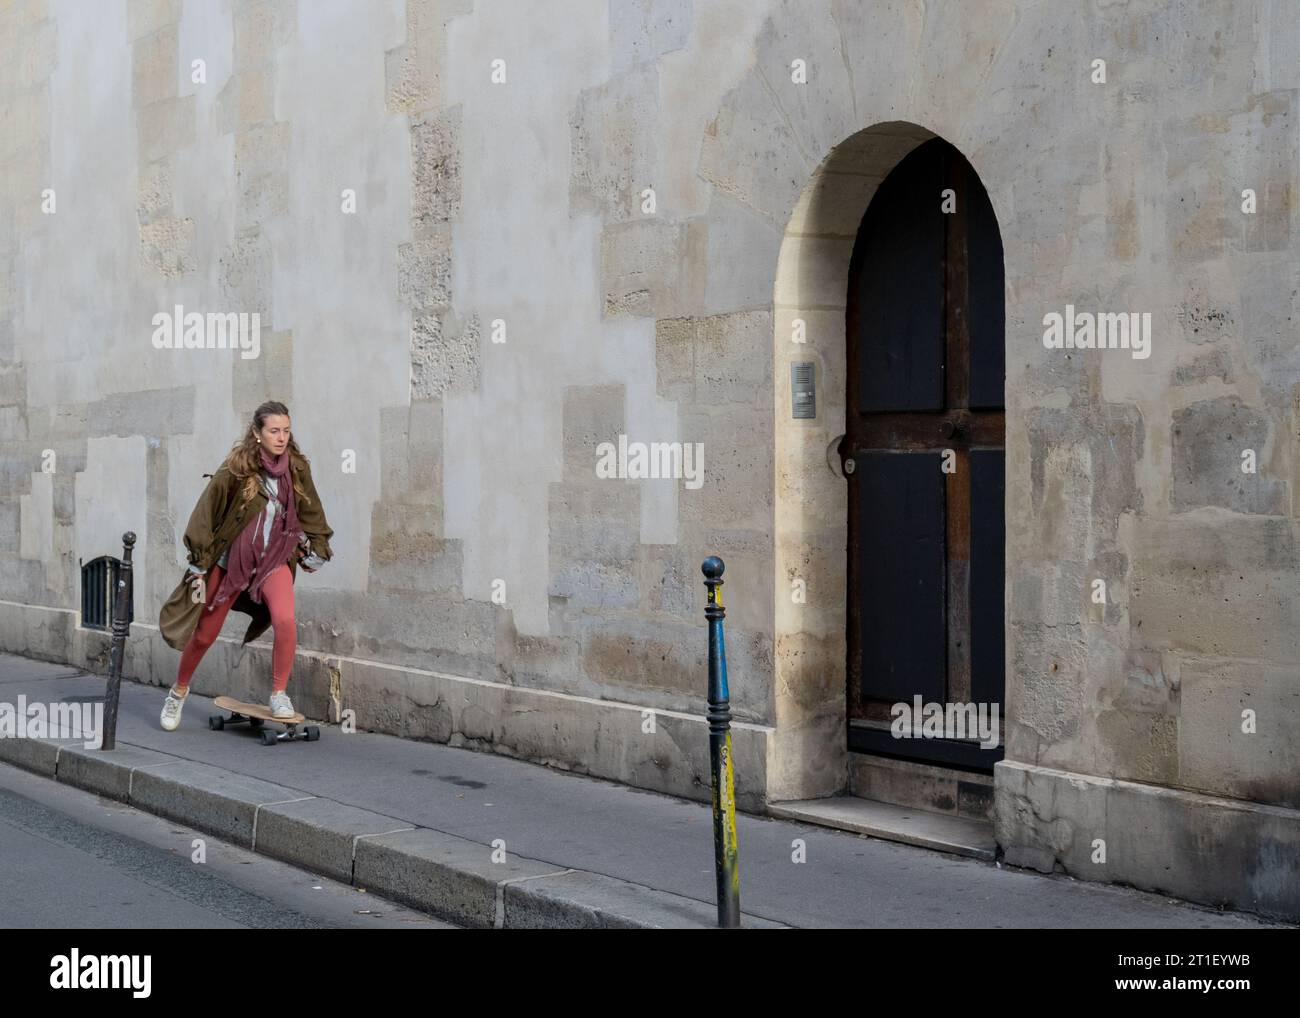 Paris France vie quotidienne authentique, fille skateboard au travail Banque D'Images